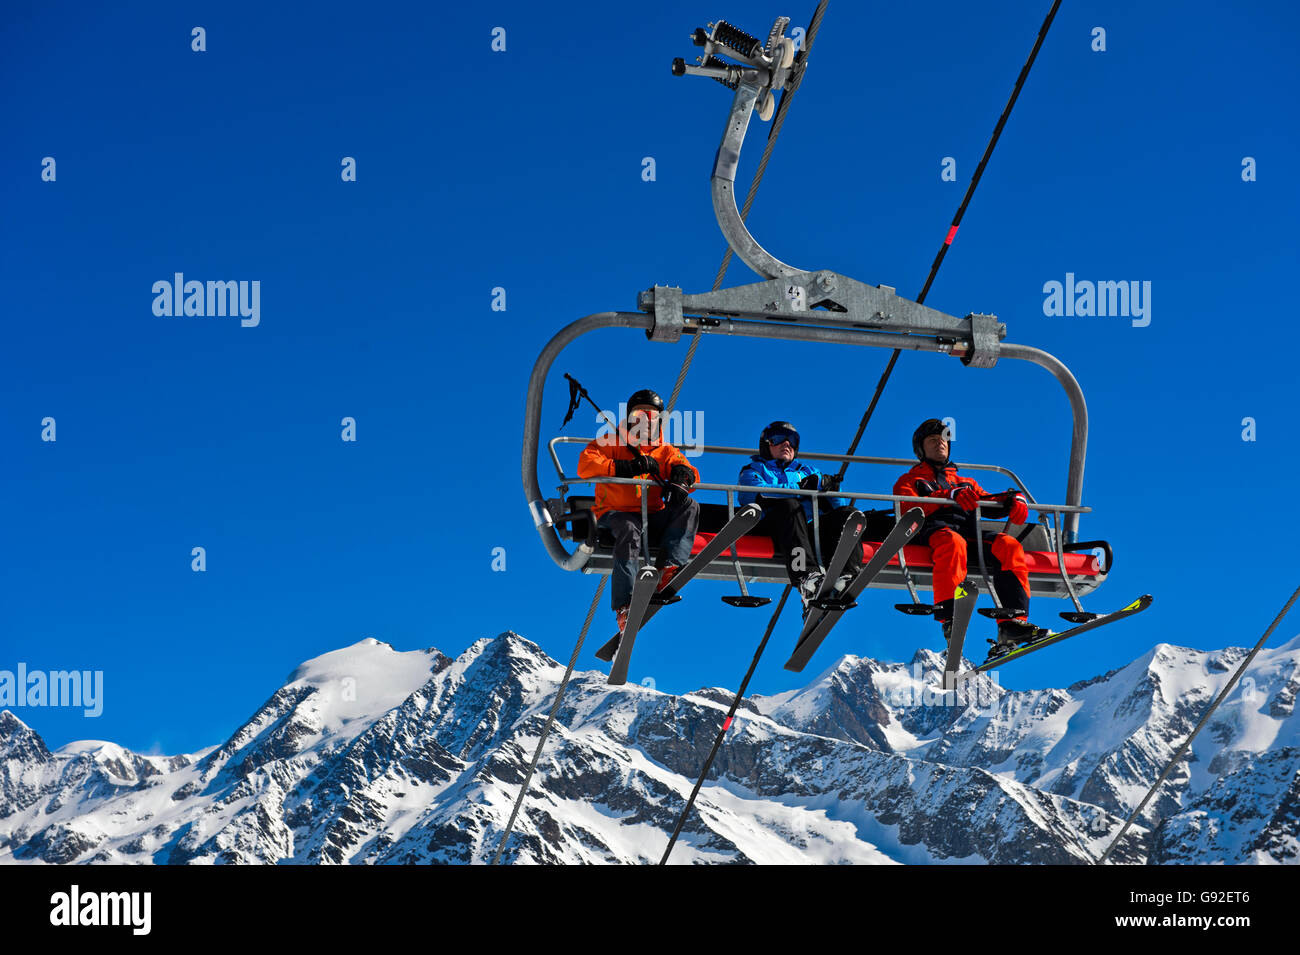 Skieurs sur un télésiège dans la station de ski Les Contamines-Montjoie, derrière le massif du Mont Blanc, Haute-Savoie, France Banque D'Images